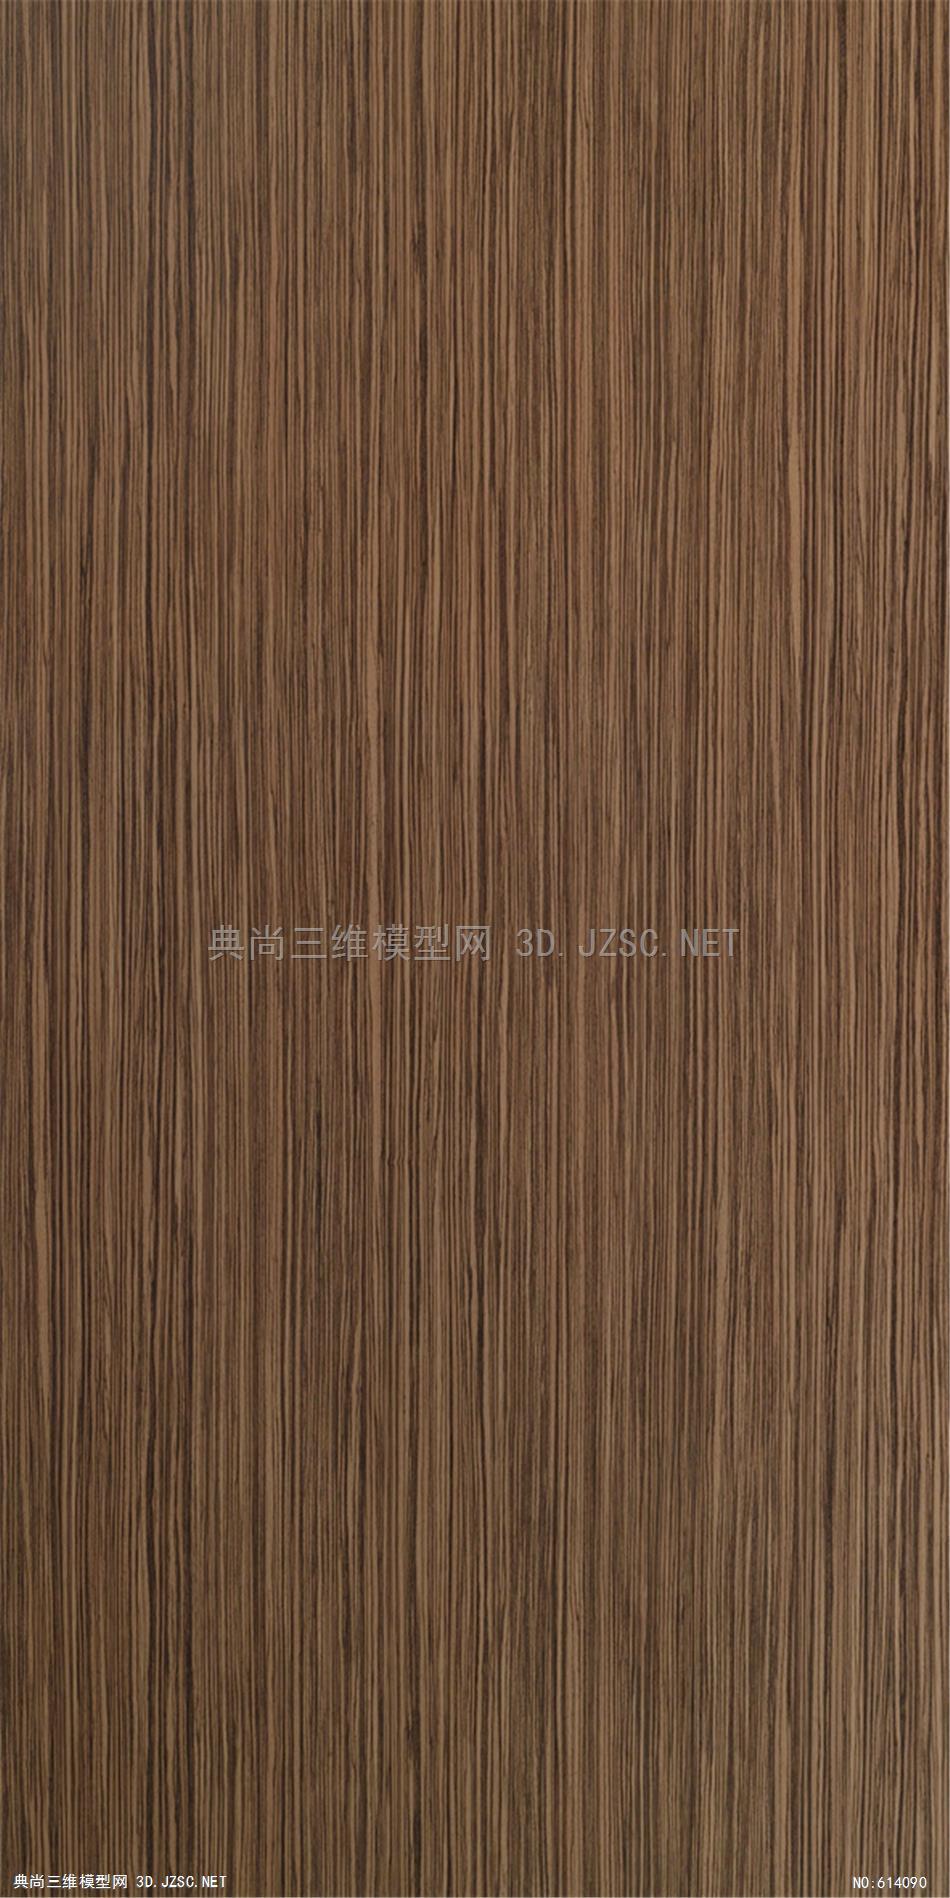 木饰面木纹木材高清材质贴图232材质贴图